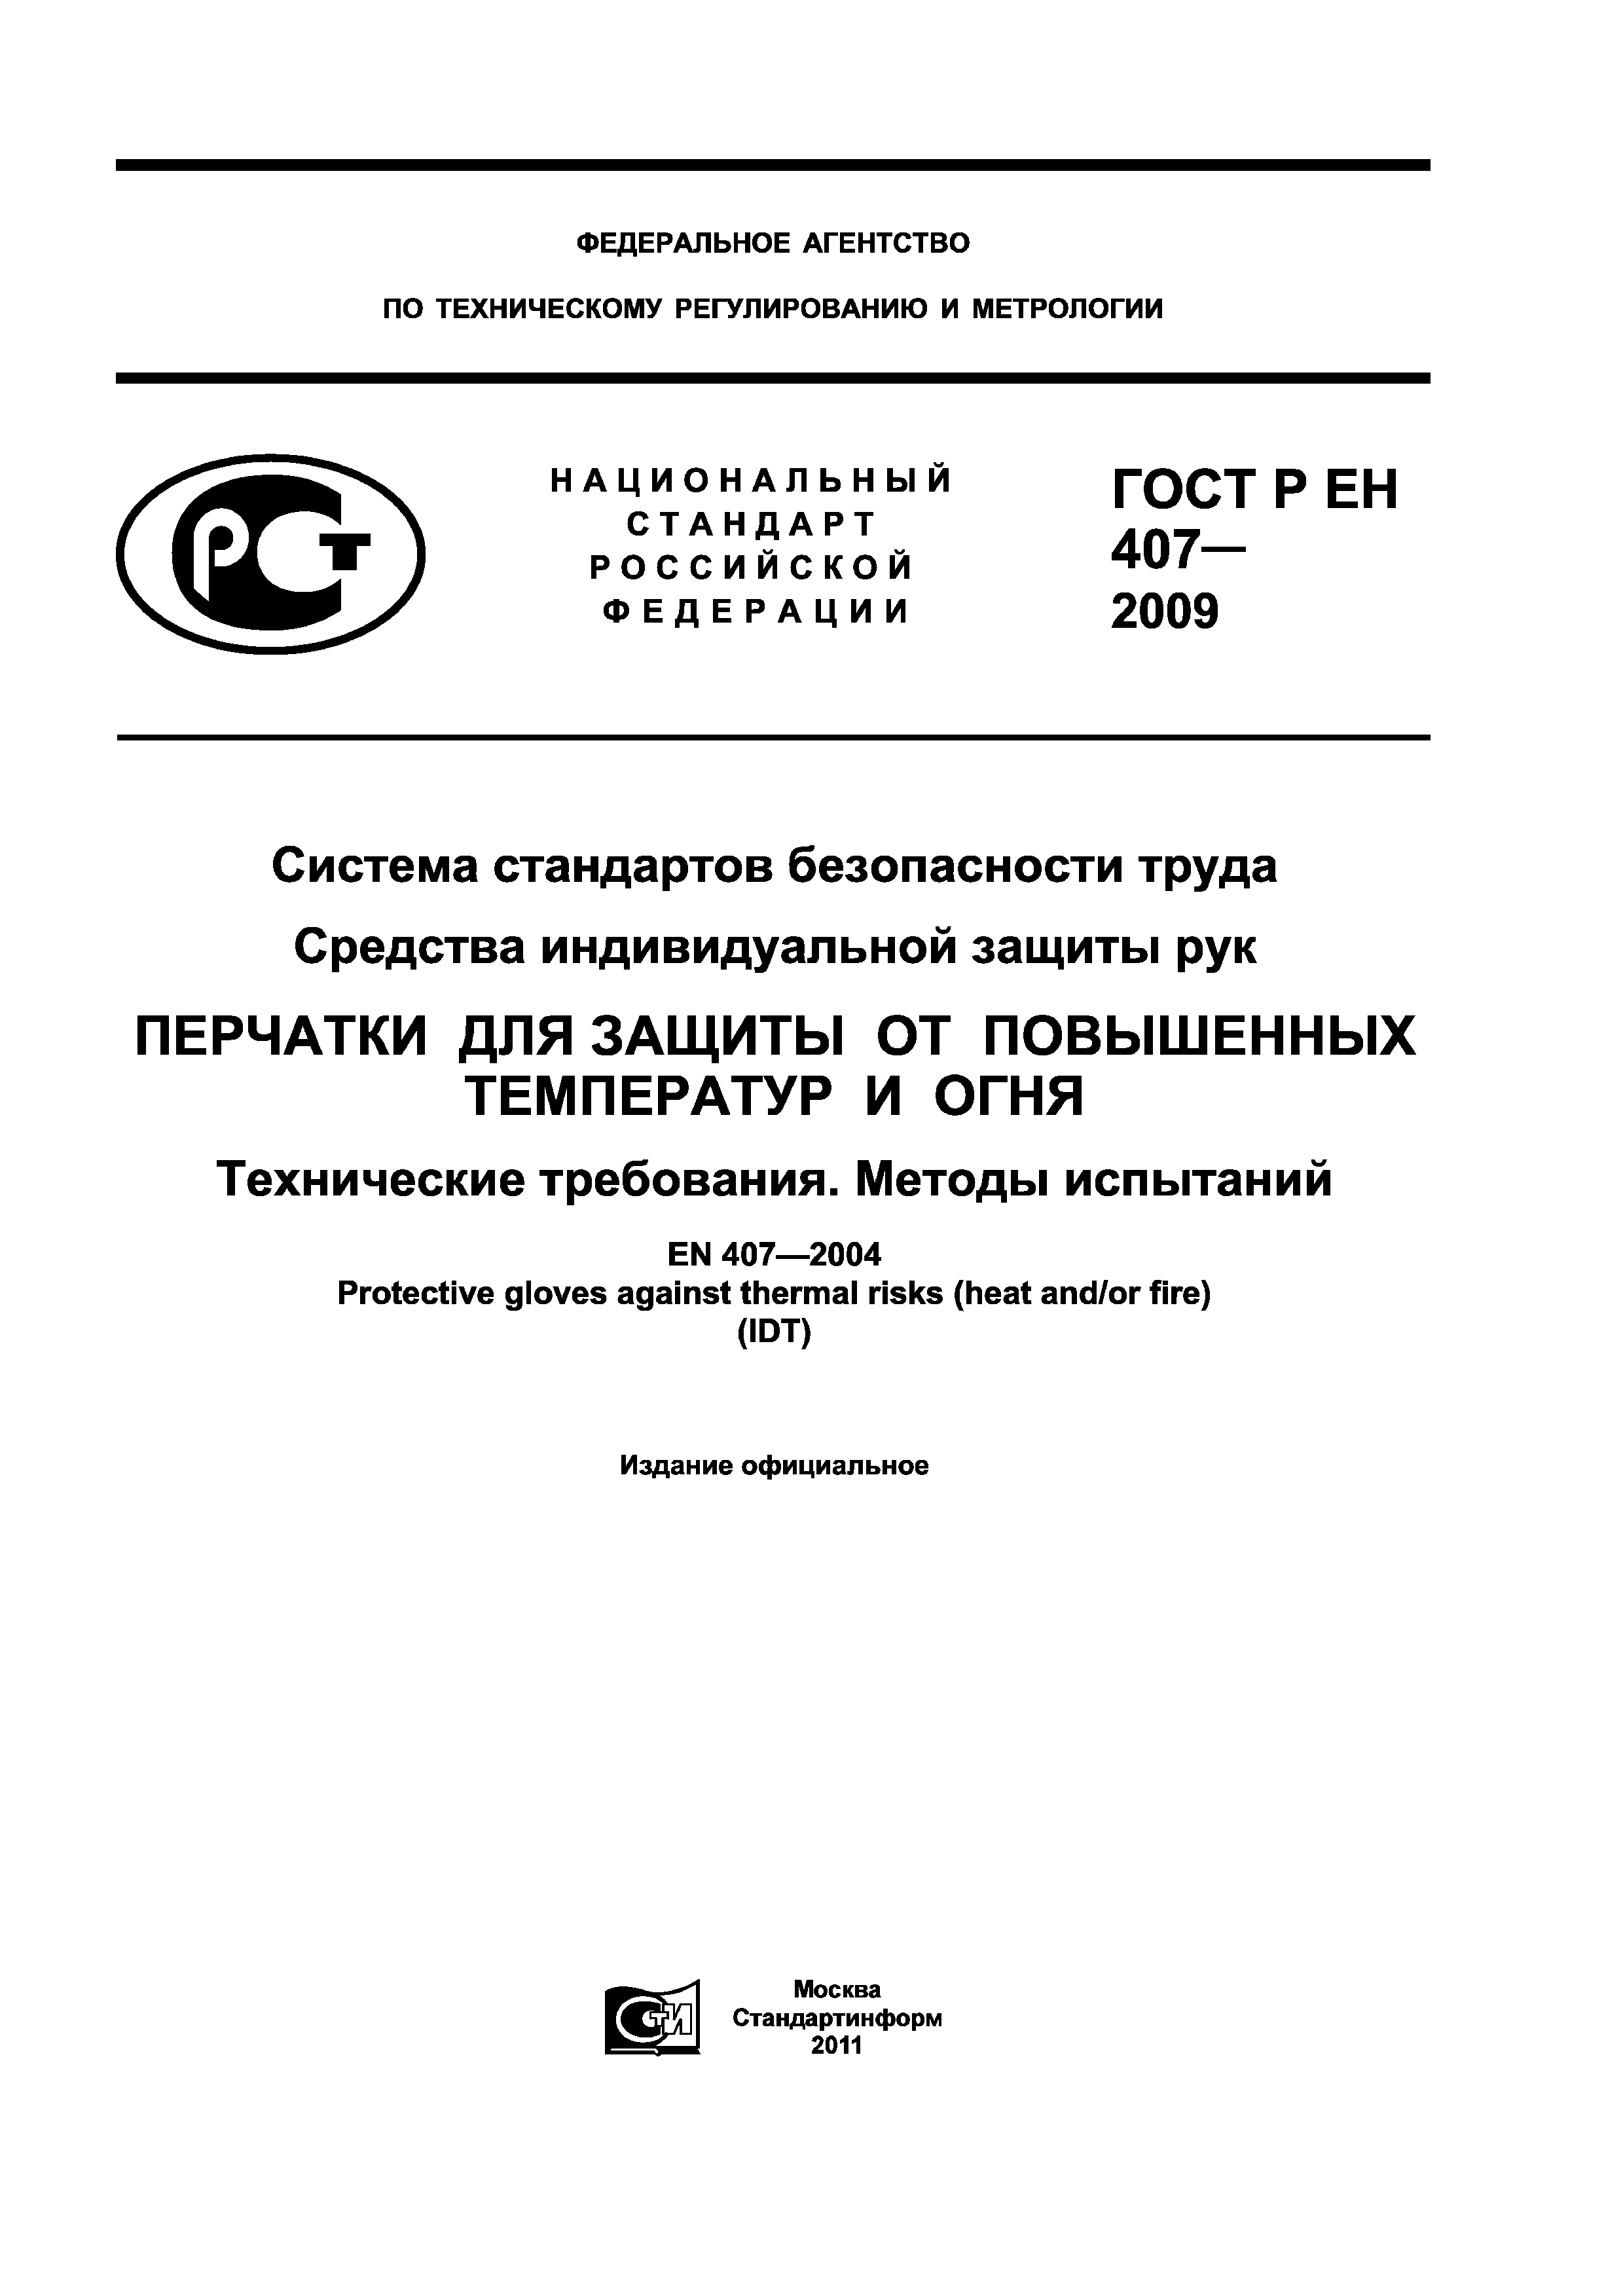 ГОСТ Р ЕН 407-2009